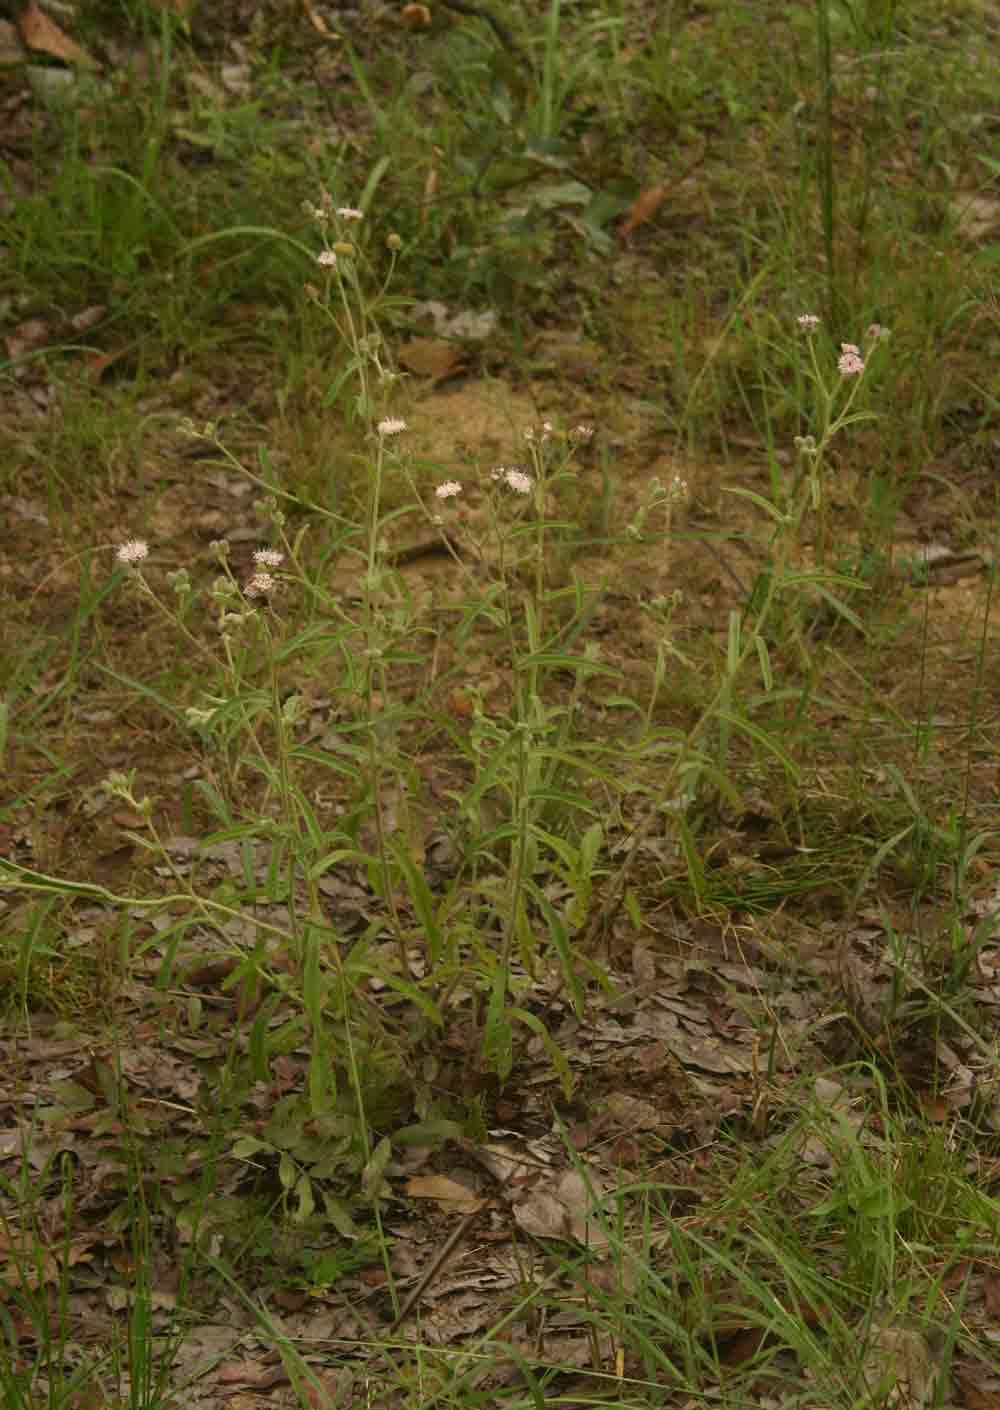 Sivun Vernoniastrum kuva